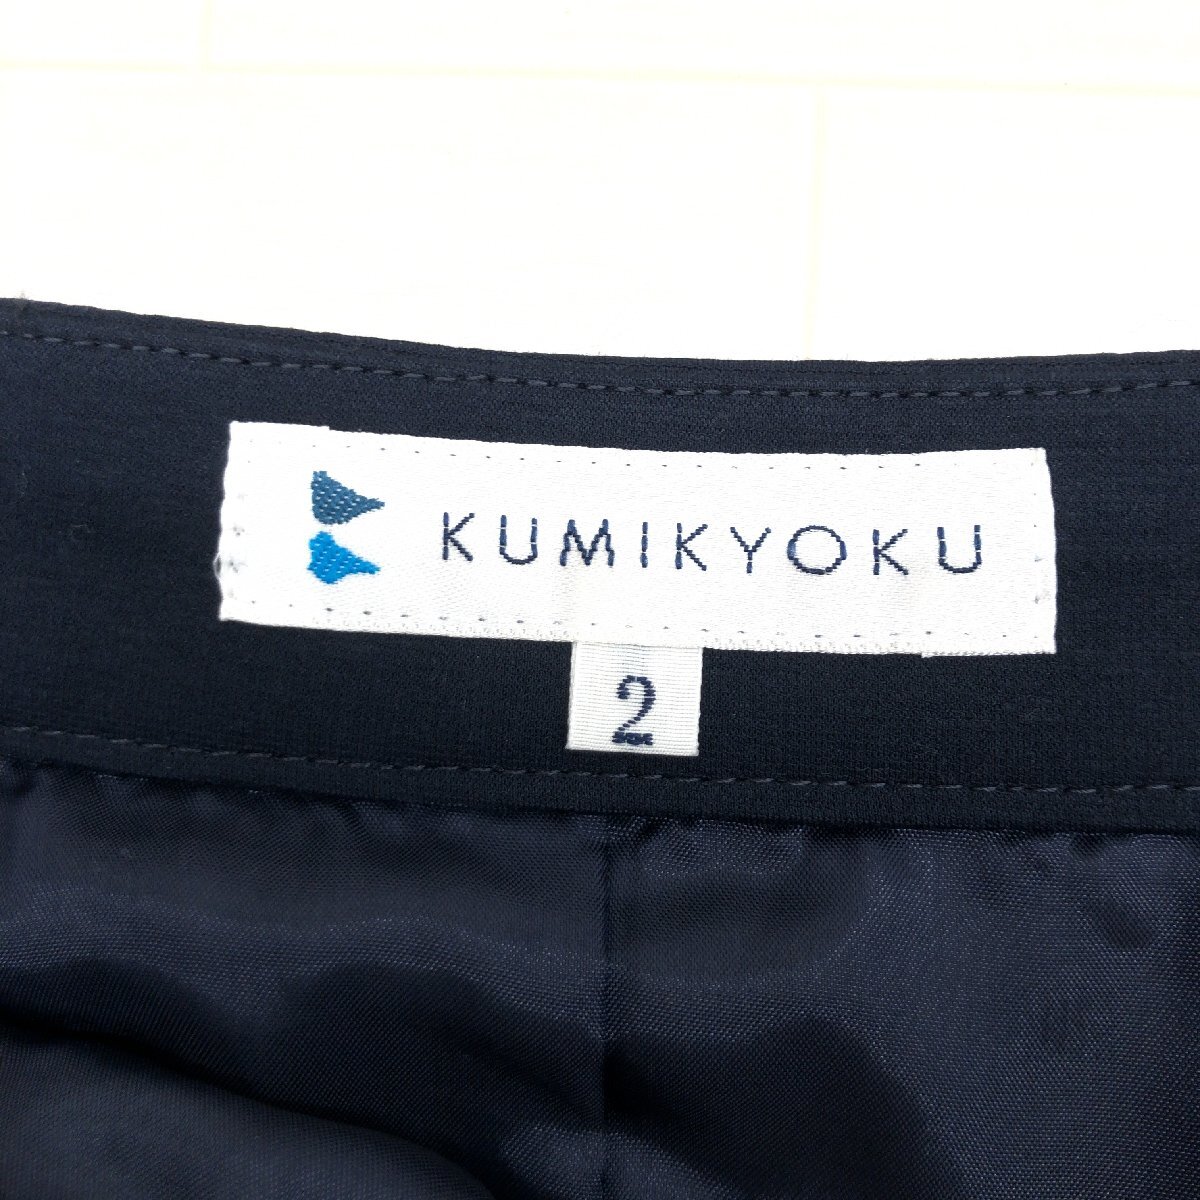 新品 KUMIKYOKU クミキョク コットン フレアスカート 2(M) w66 濃紺 ネイビー ミディ丈 国内正規品 レディース 女性用 組曲 未使用の画像3